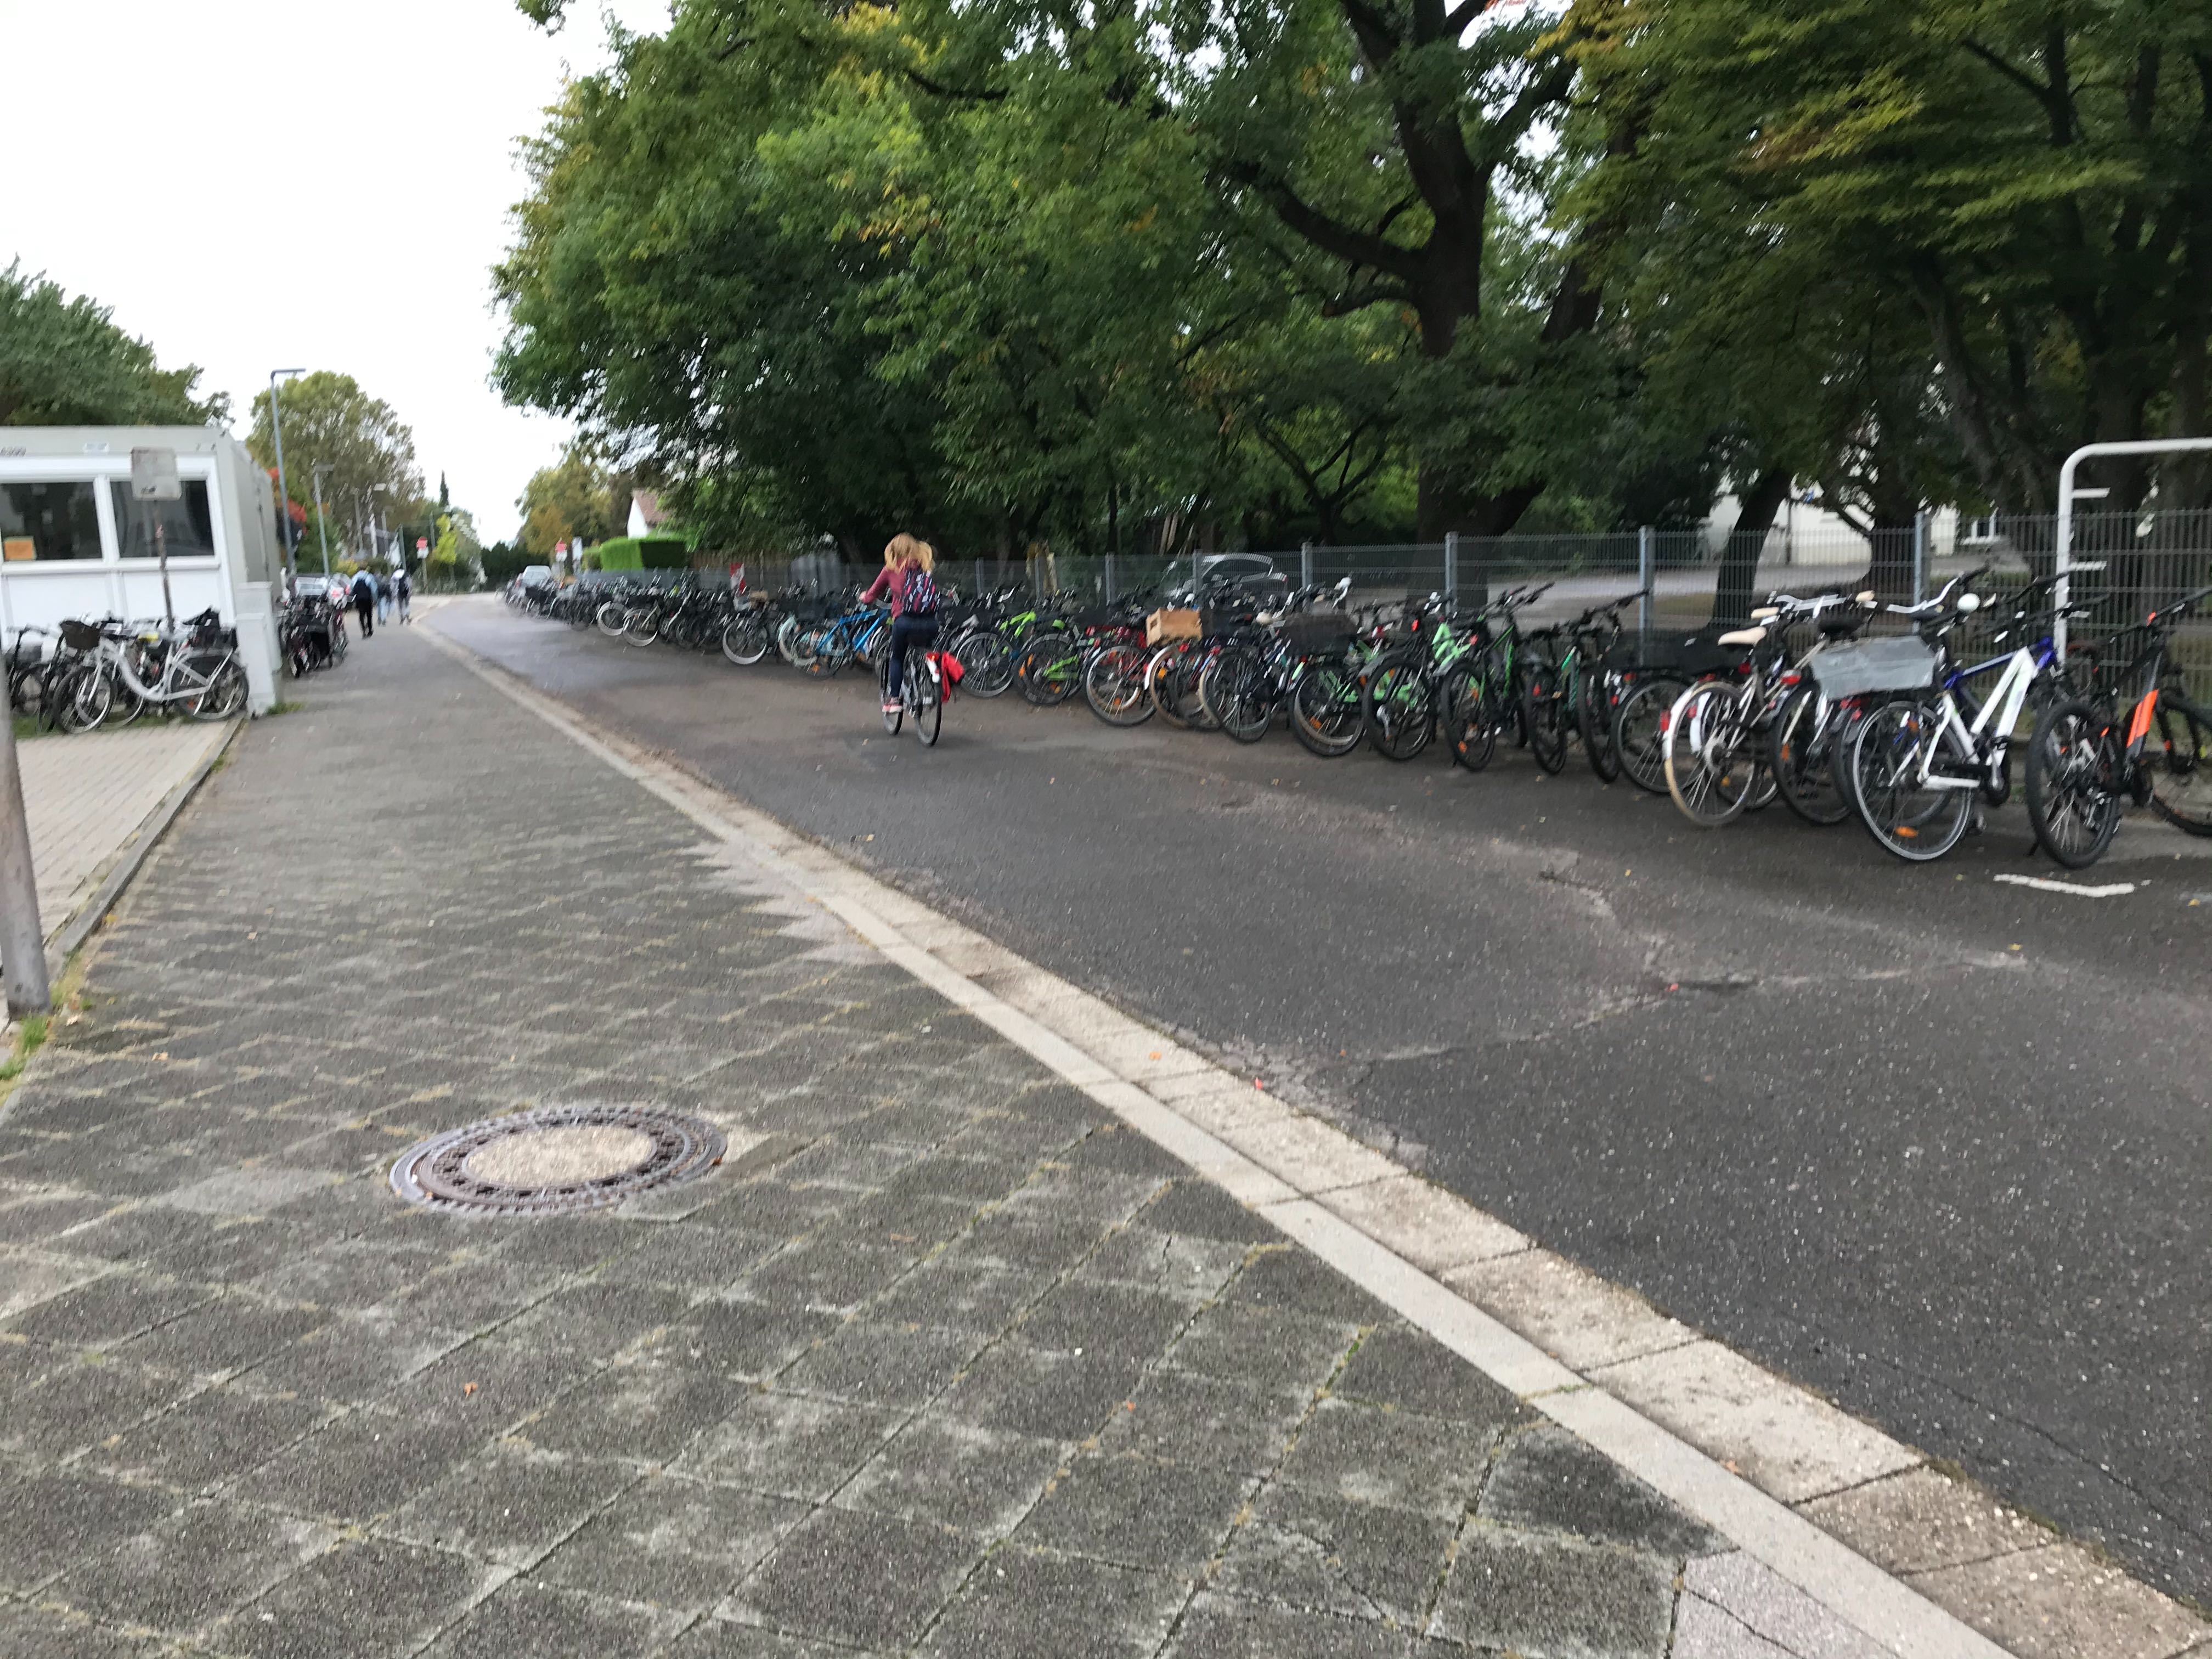 Straße, daneben ein Bürgersteig, auf dem viele Fahrräder geparkt sind